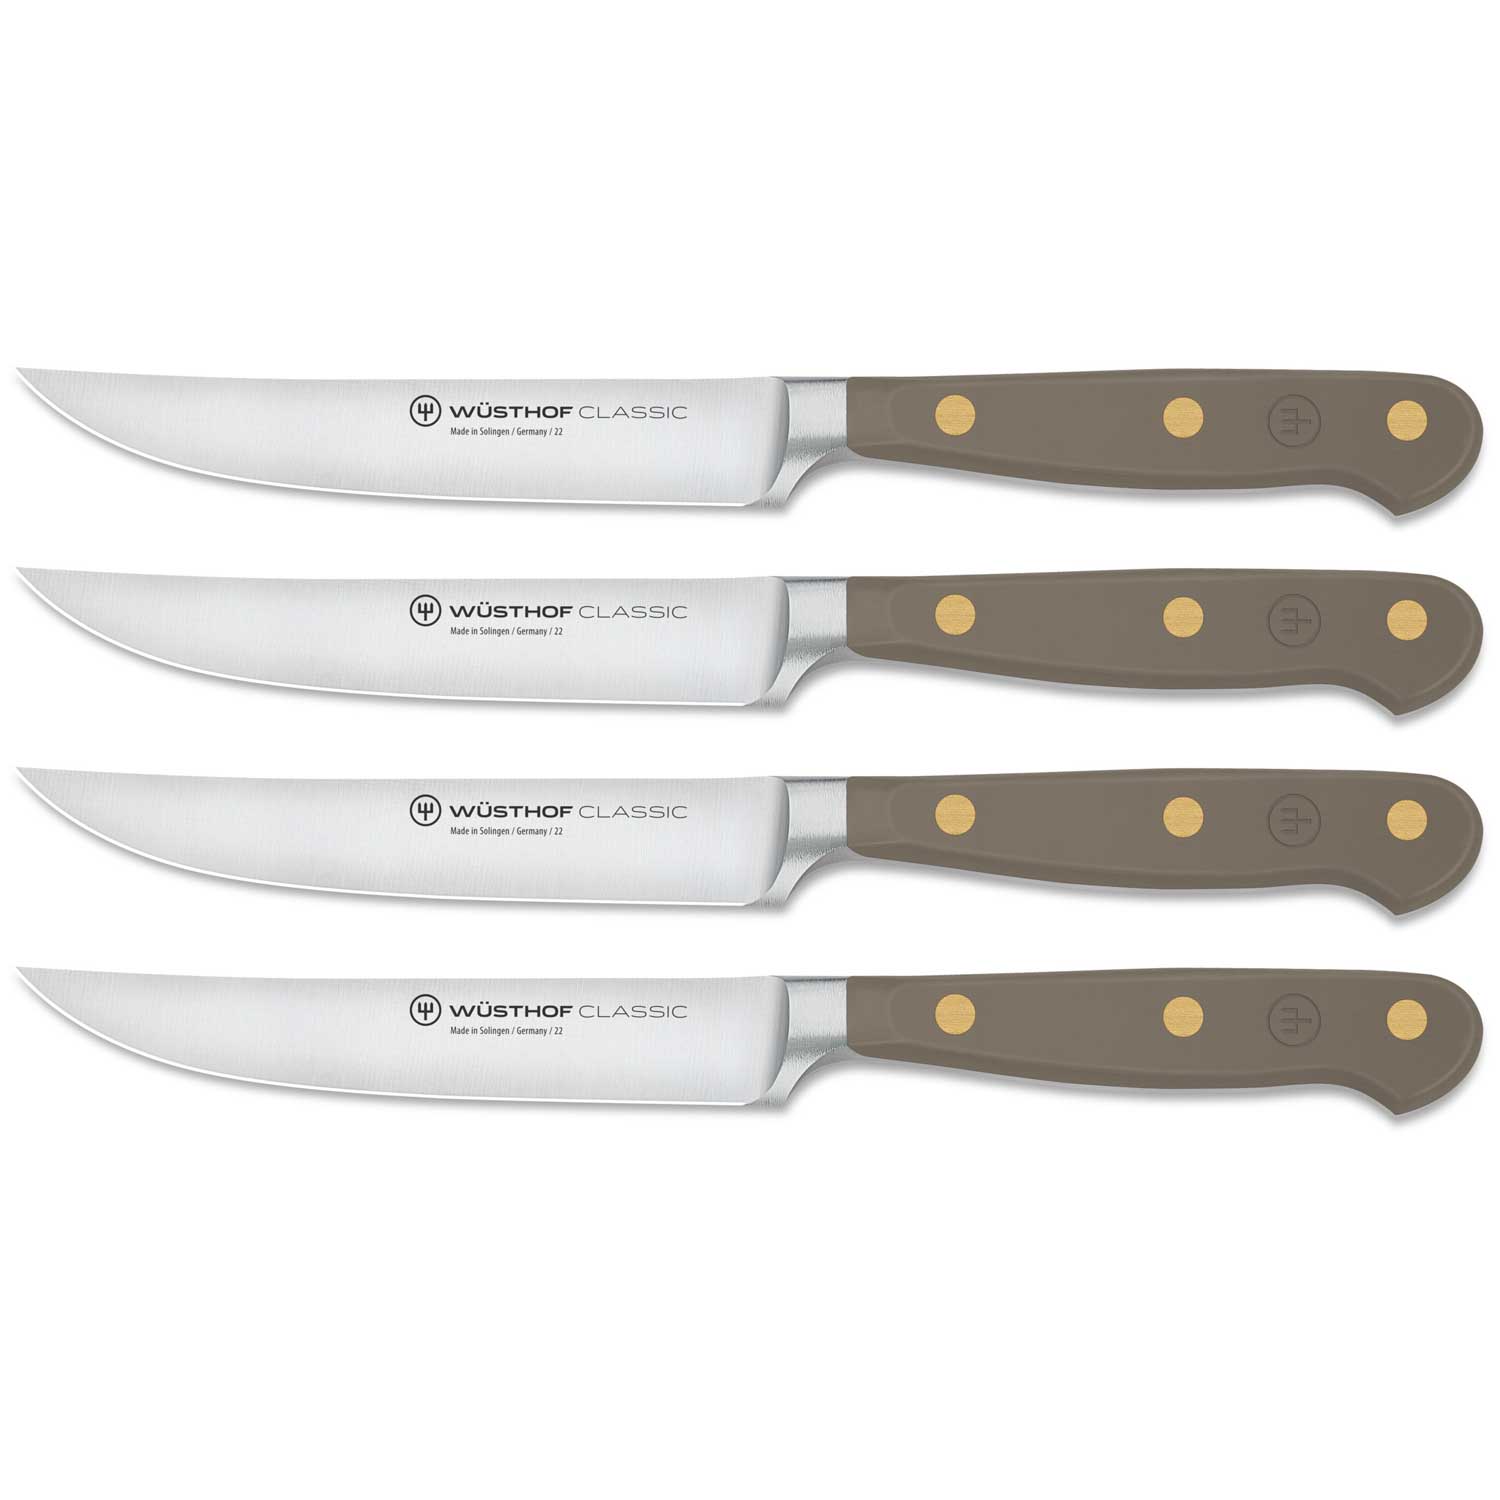 https://royaldesign.com/image/2/wusthof-classic-colour-steak-knives-4-pack-1